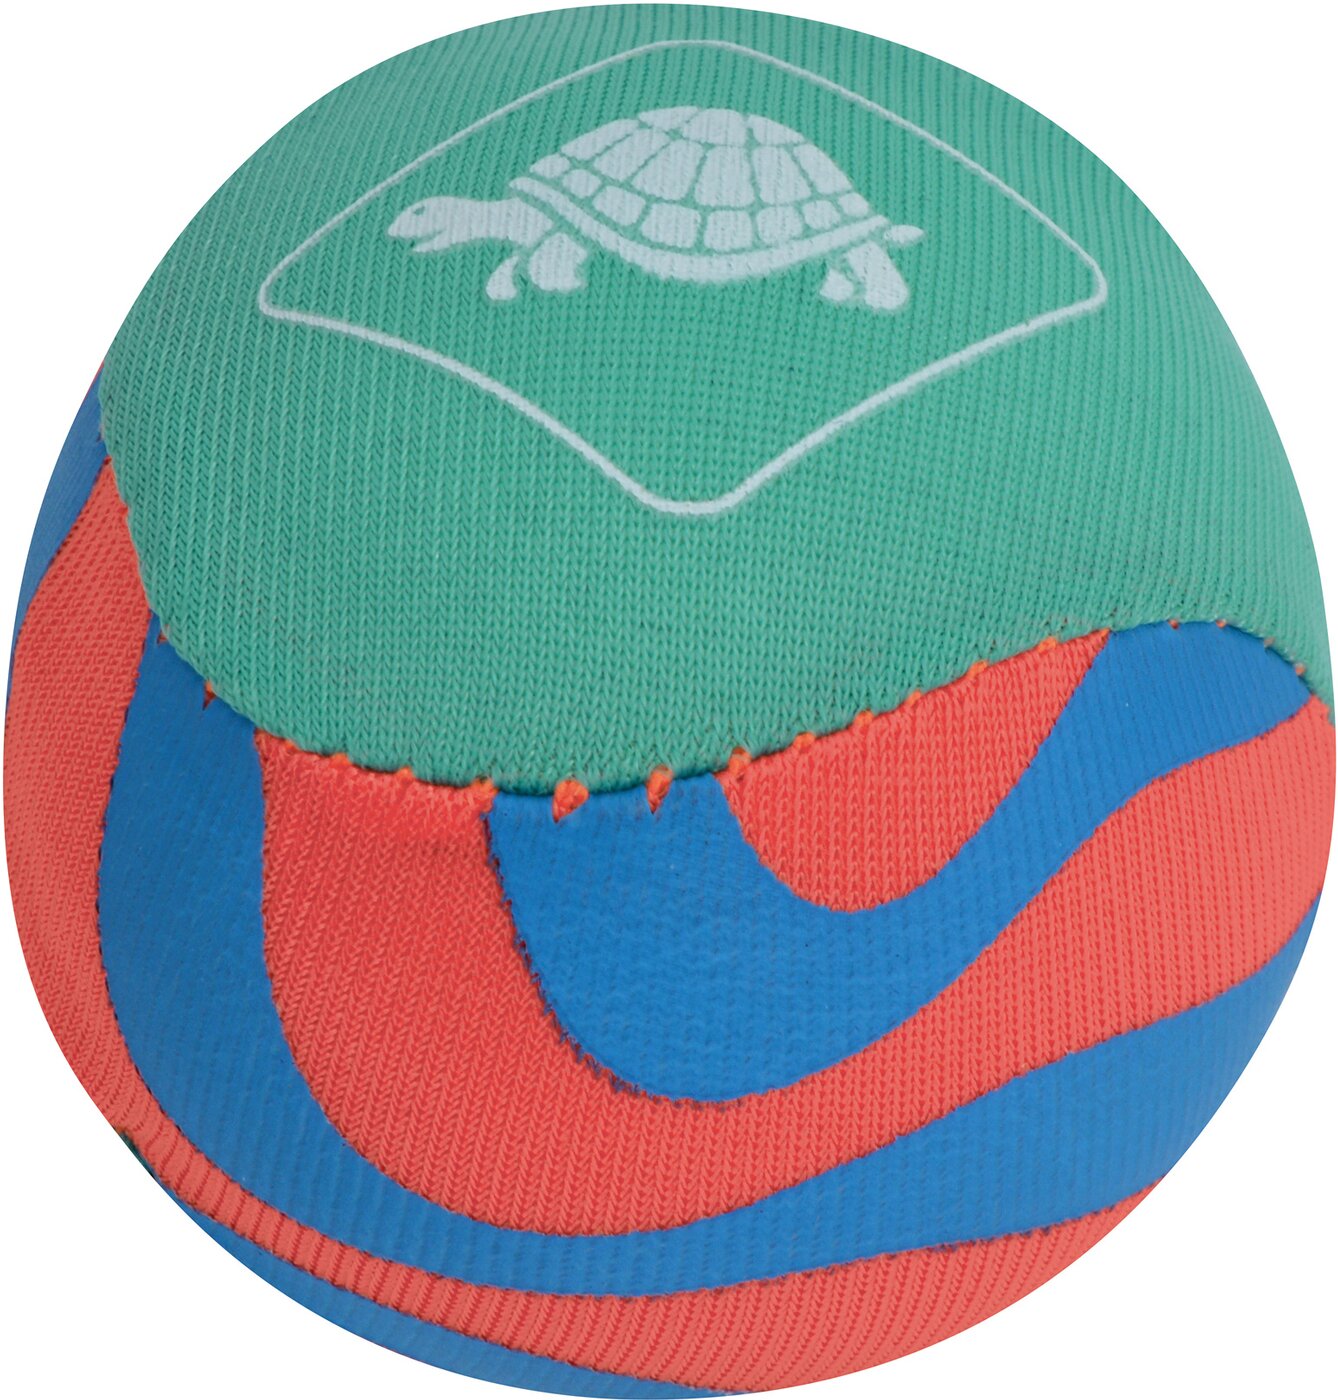 SCHILDKRÖT FUN SPORTS NEOPREN WAVE-JUMPER-BALL Farbe 000 i keine Ball online kaufen (1